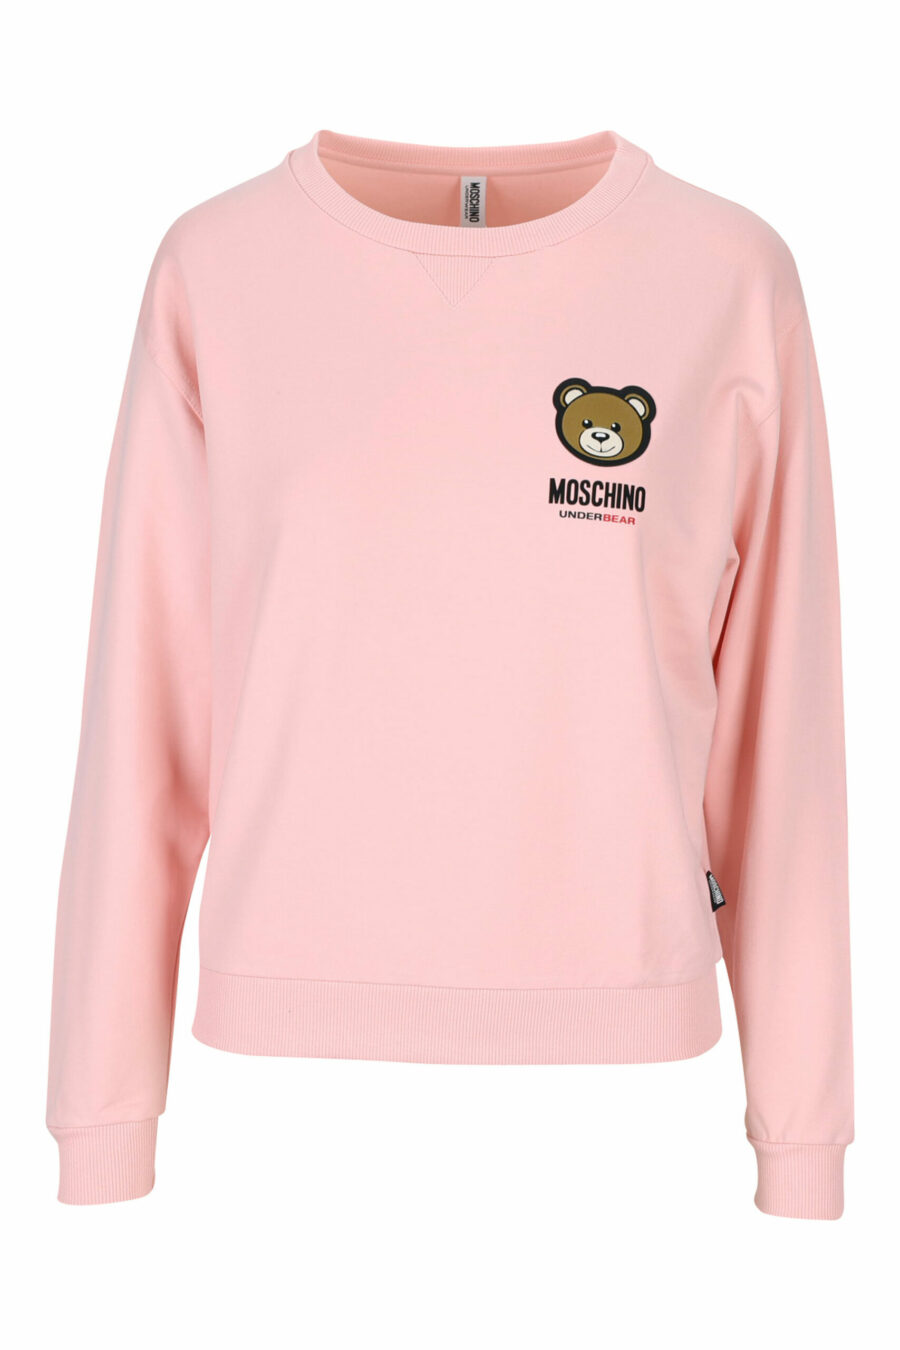 Sweatshirt rose avec logo d'ours "underbear" - 889316618365